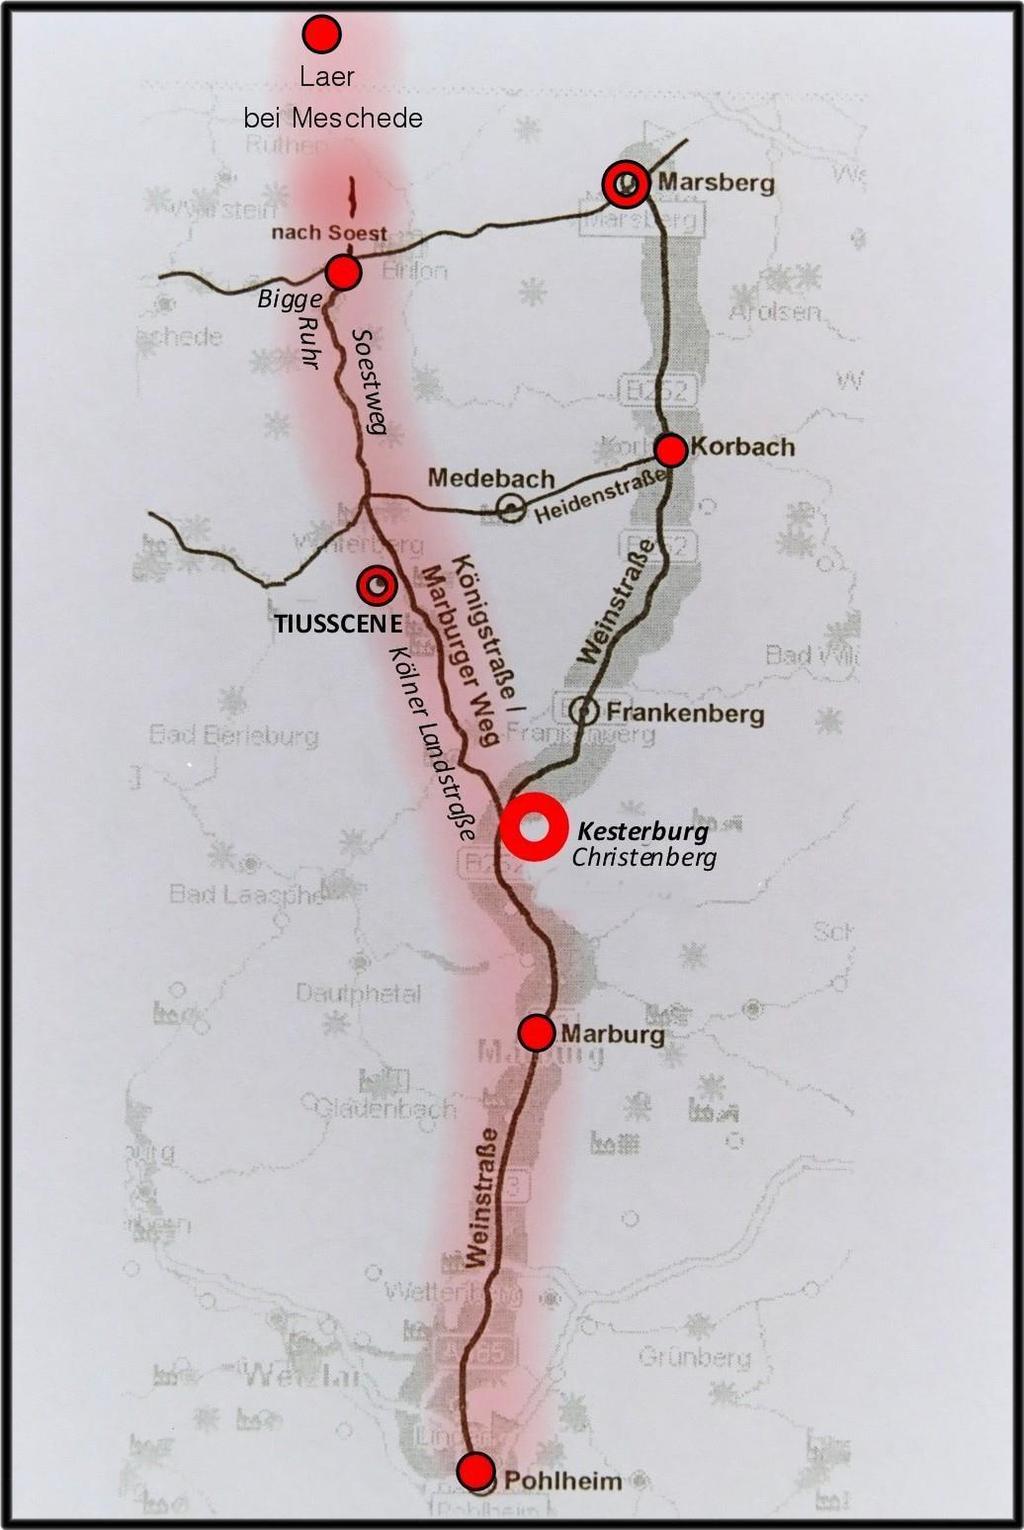 Vermutlich mittelalterliche Etappenorte an der Süd-Nordachse, zwischen Lahn, Ruhr und dem Hellweg.